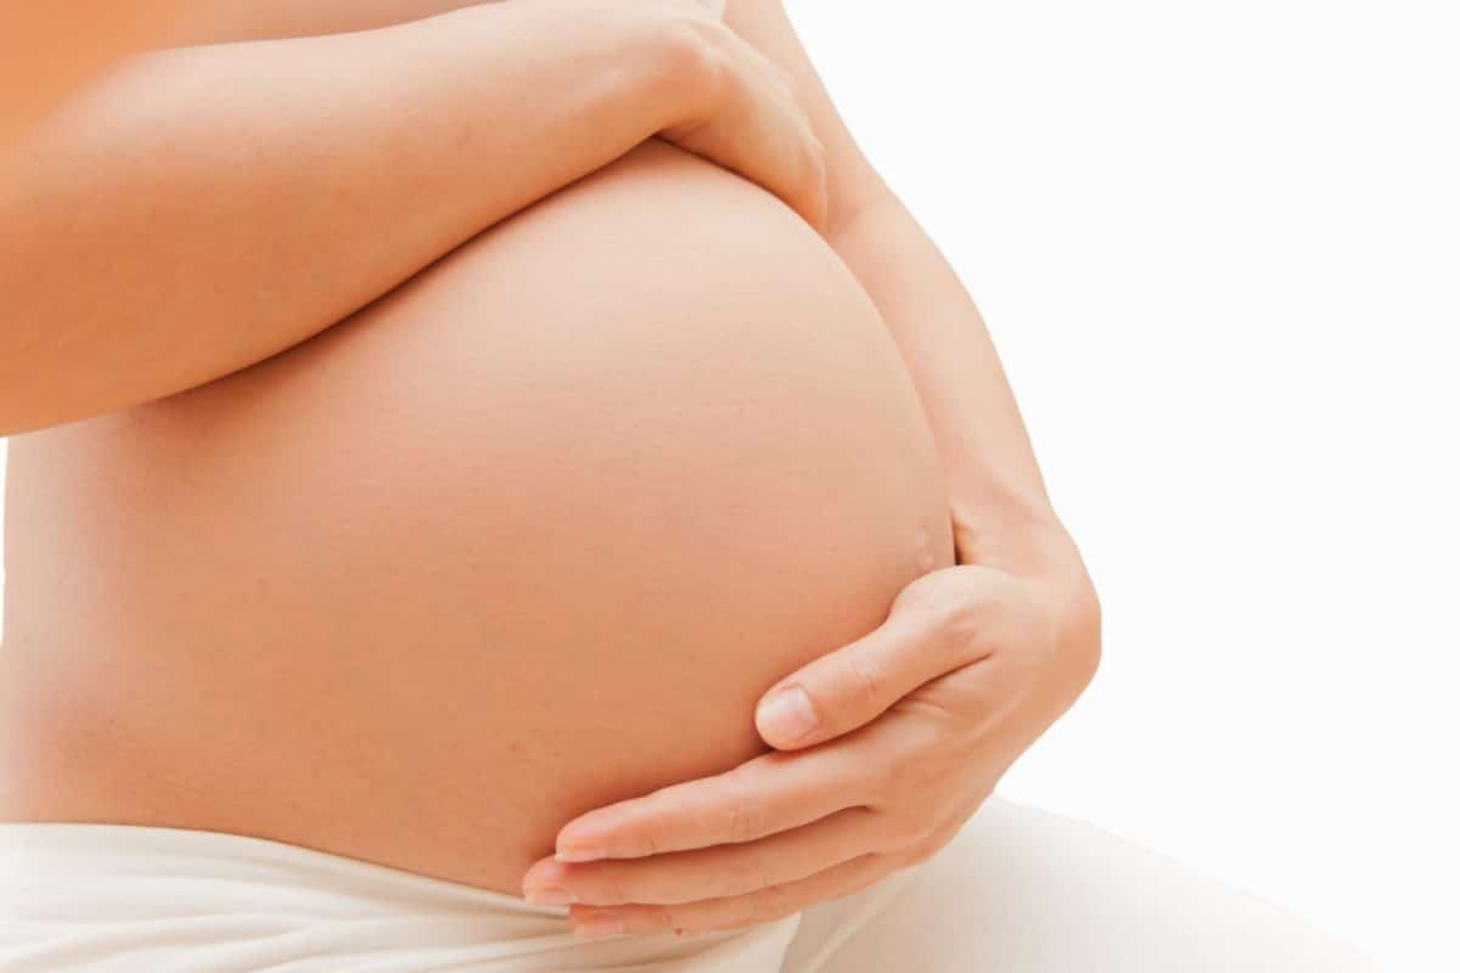 Acne na gravidez: como cuidar da pele durante a gestação? | Jornal da Orla